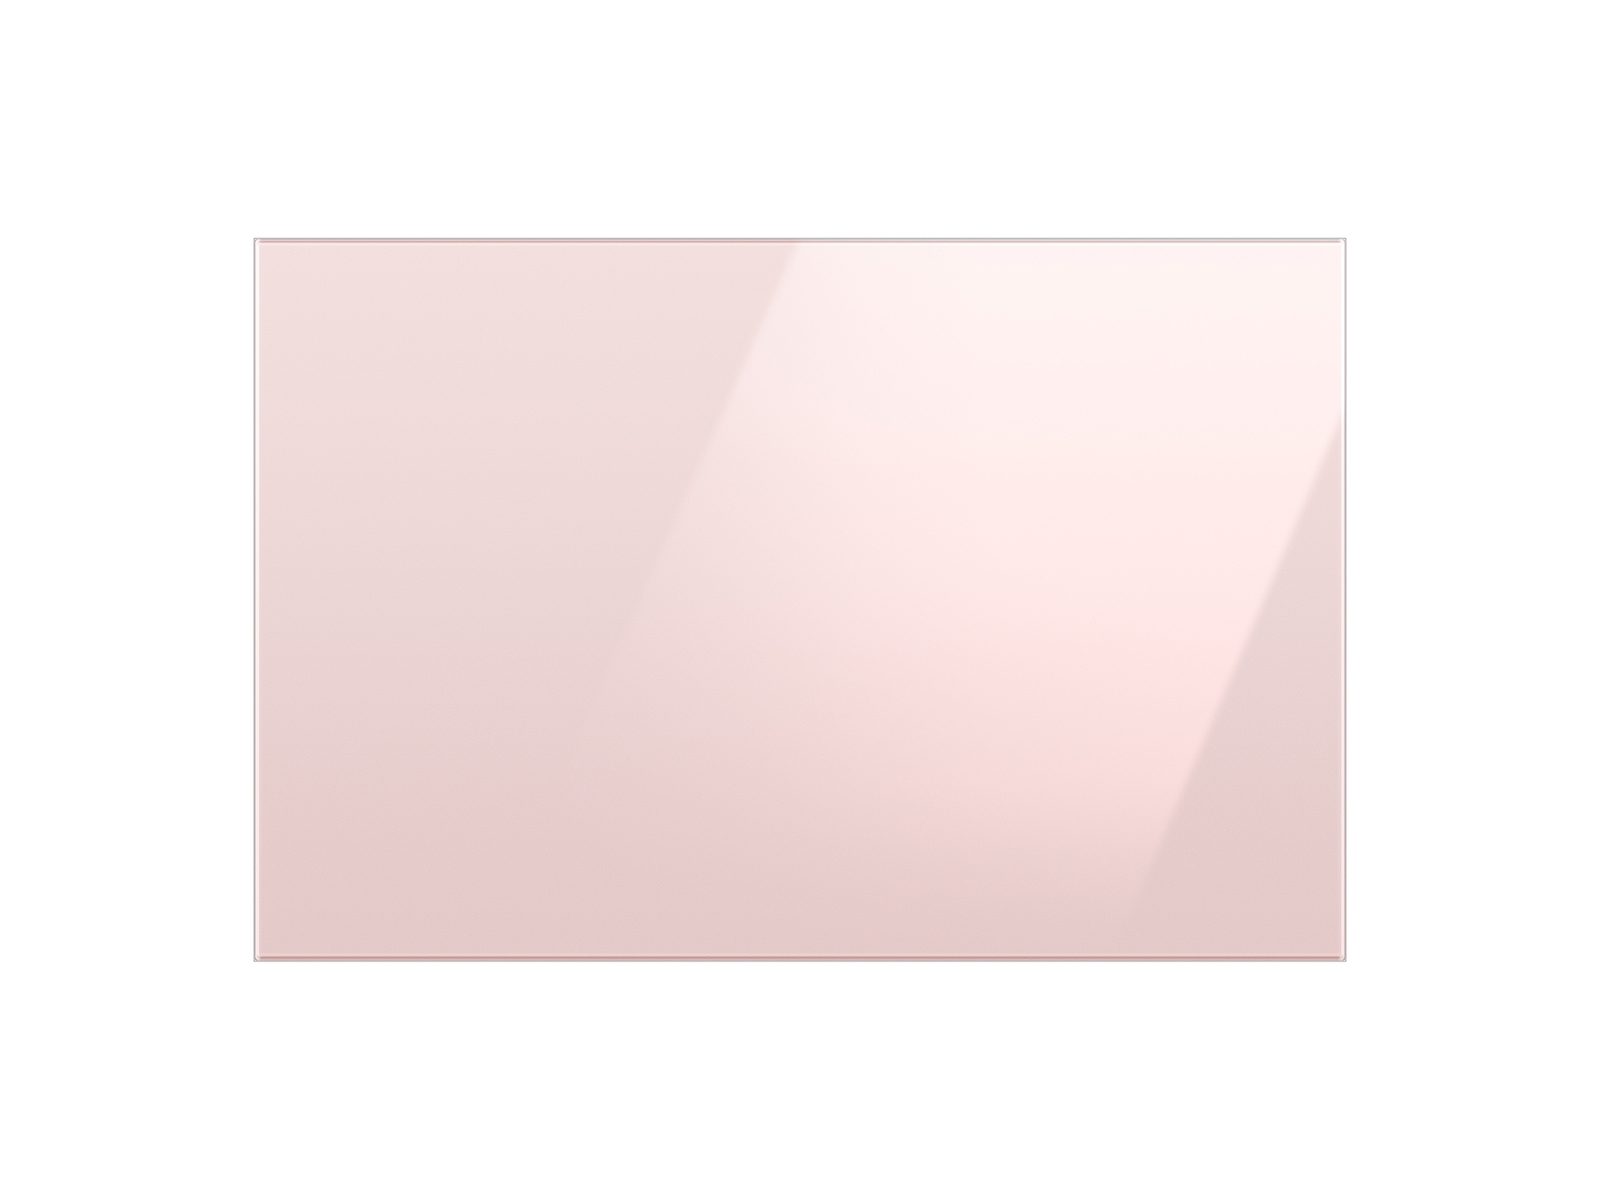 Thumbnail image of Bespoke 3-Door French Door Refrigerator Panel in Pink Glass - Bottom Panel